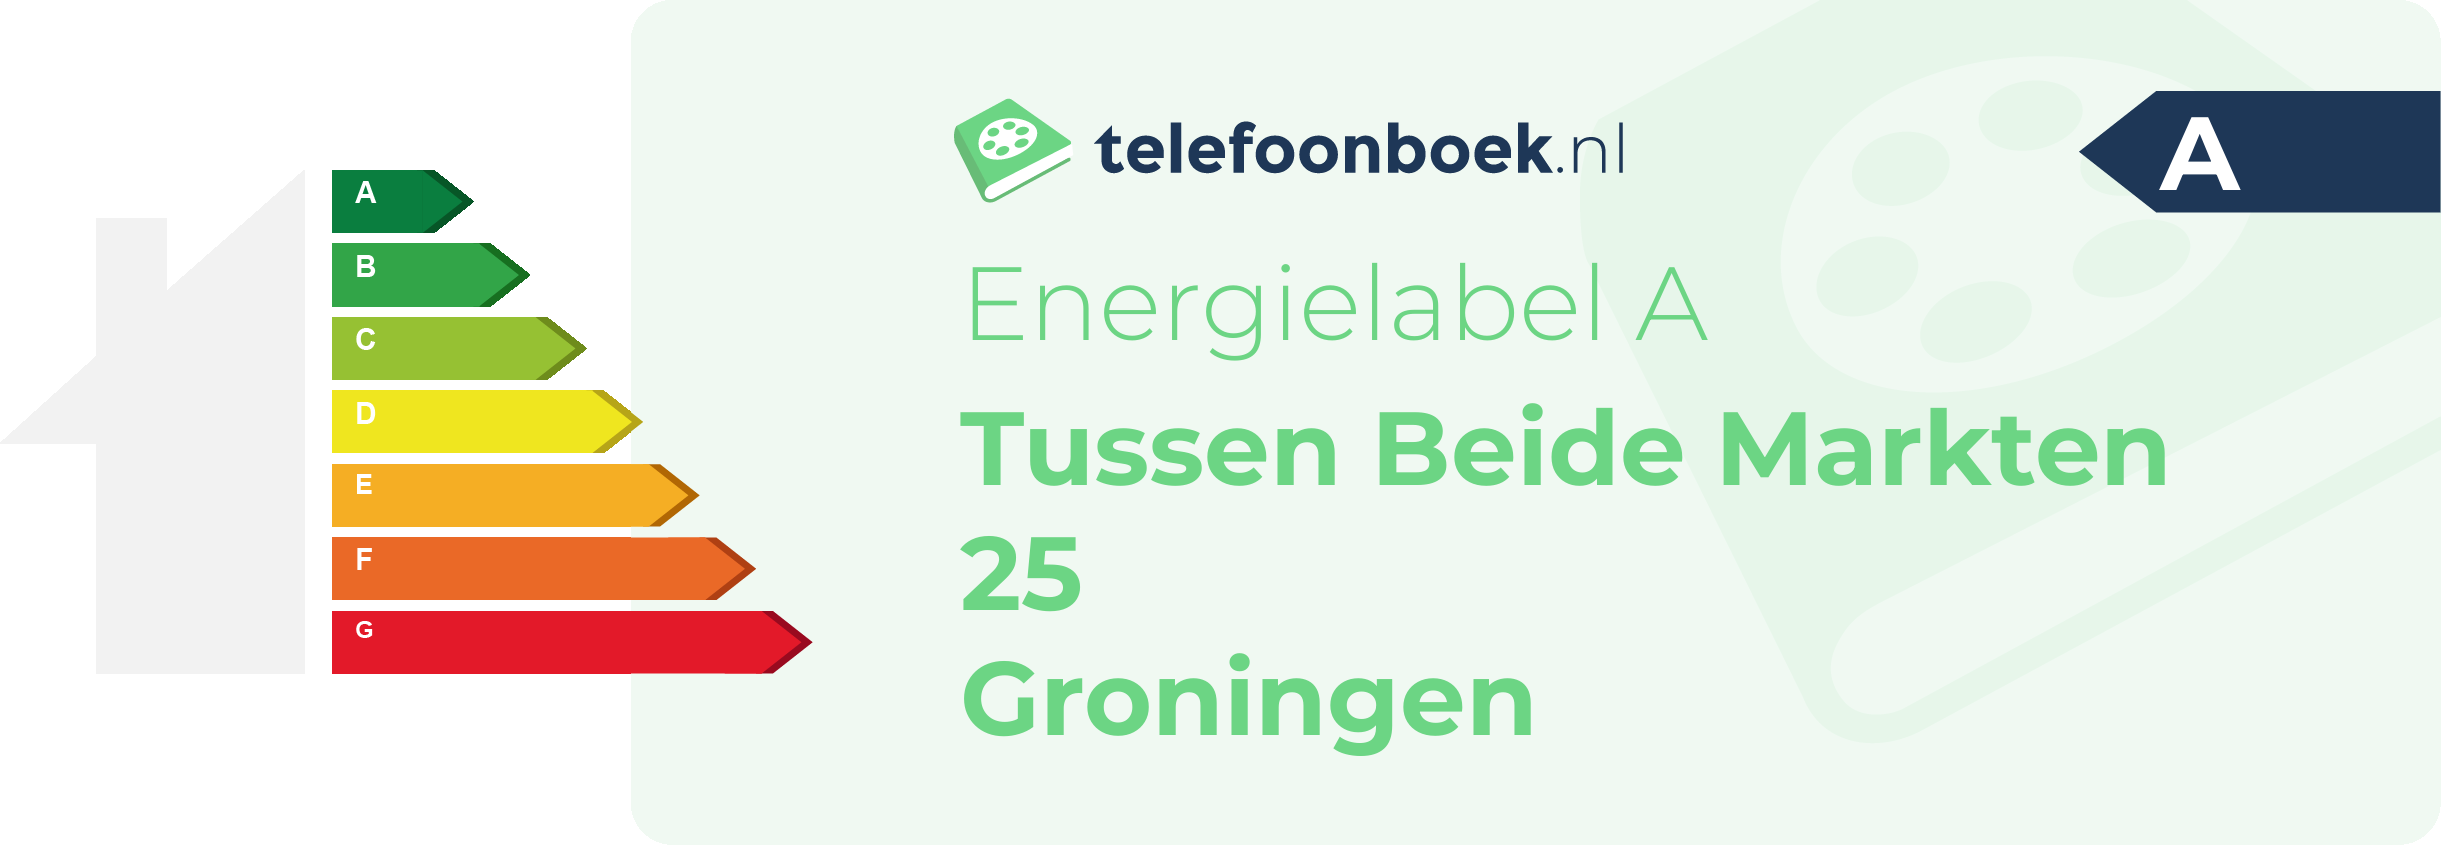 Energielabel Tussen Beide Markten 25 Groningen